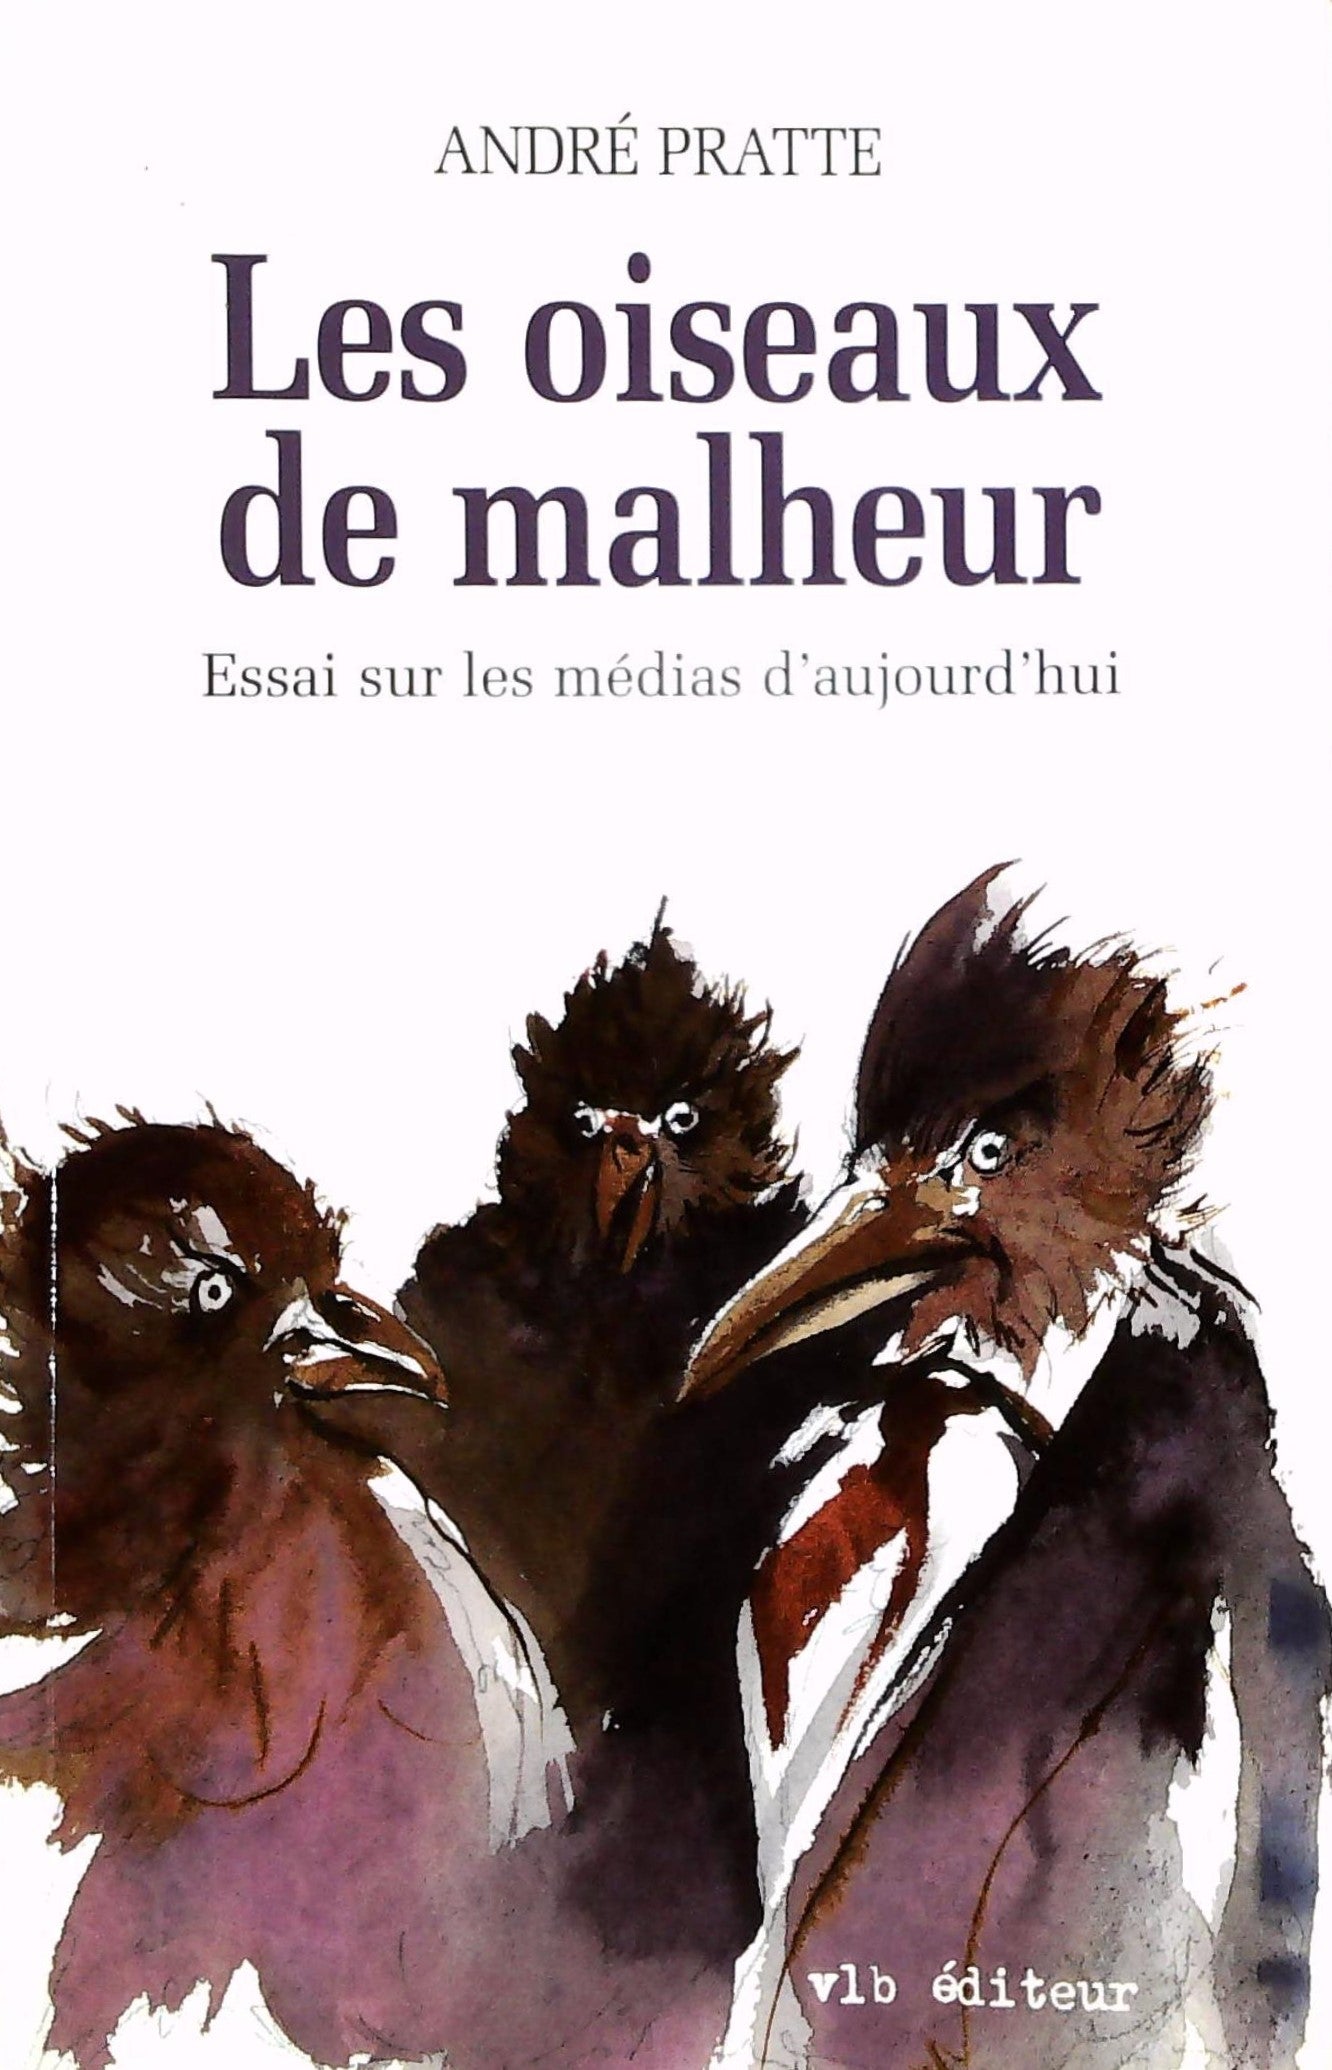 Livre ISBN 2890057399 Les oiseaux de malheur : essai sur les médias d'aujourd'hui (André Pratte)